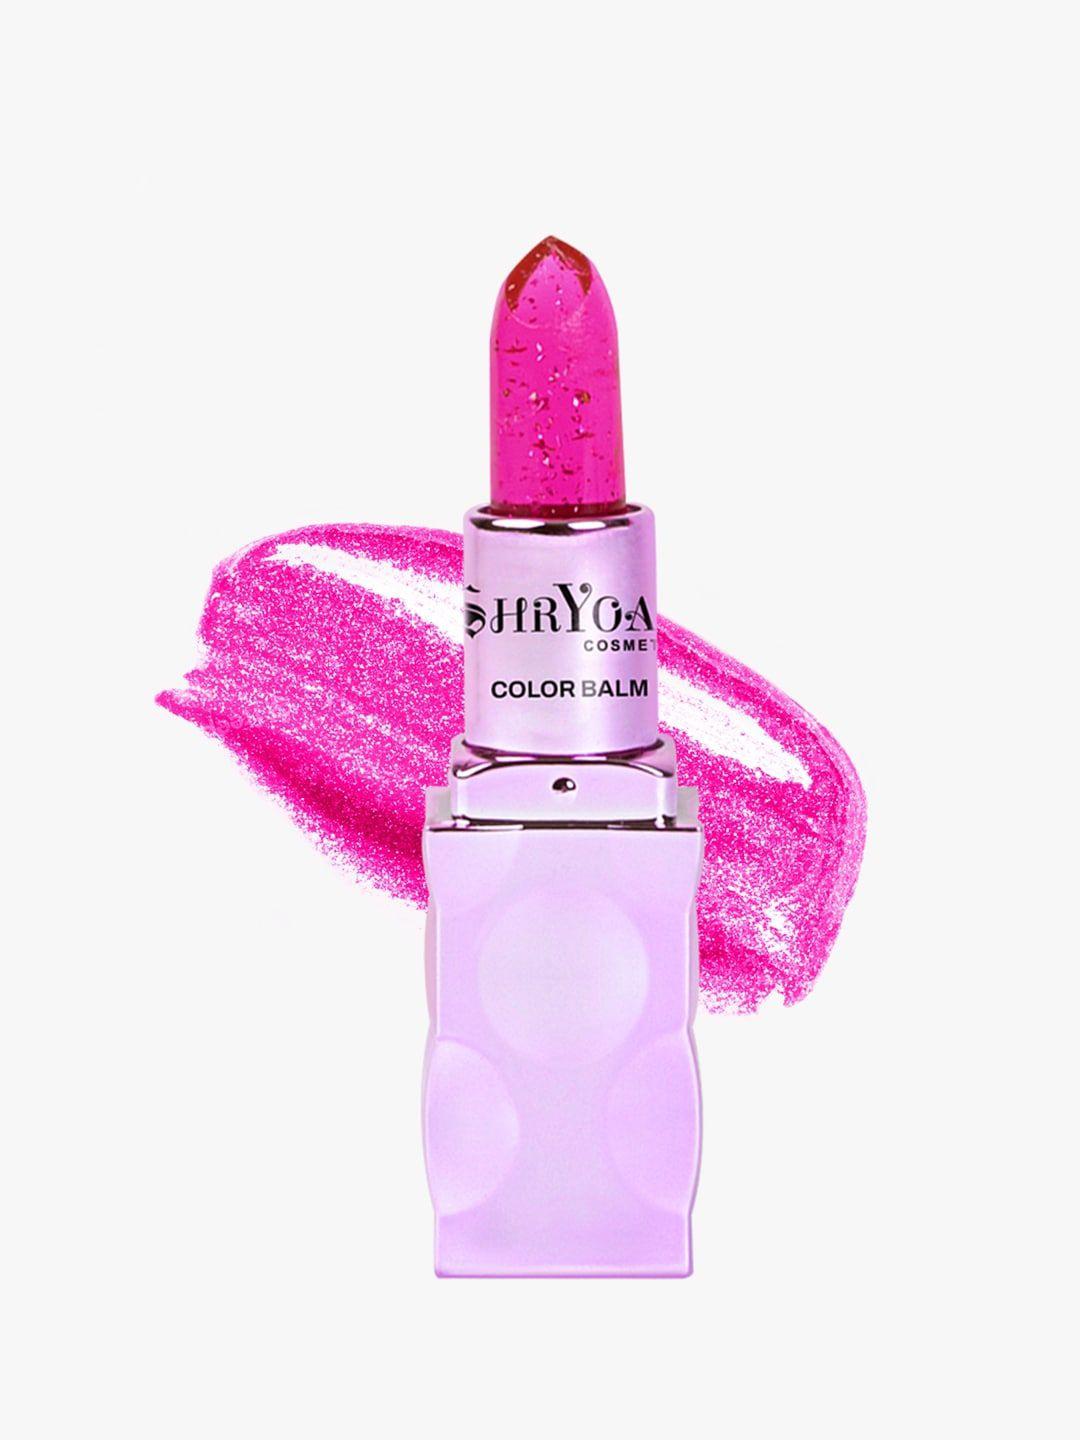 shryoan color change lipstick - 3.8g - sh06